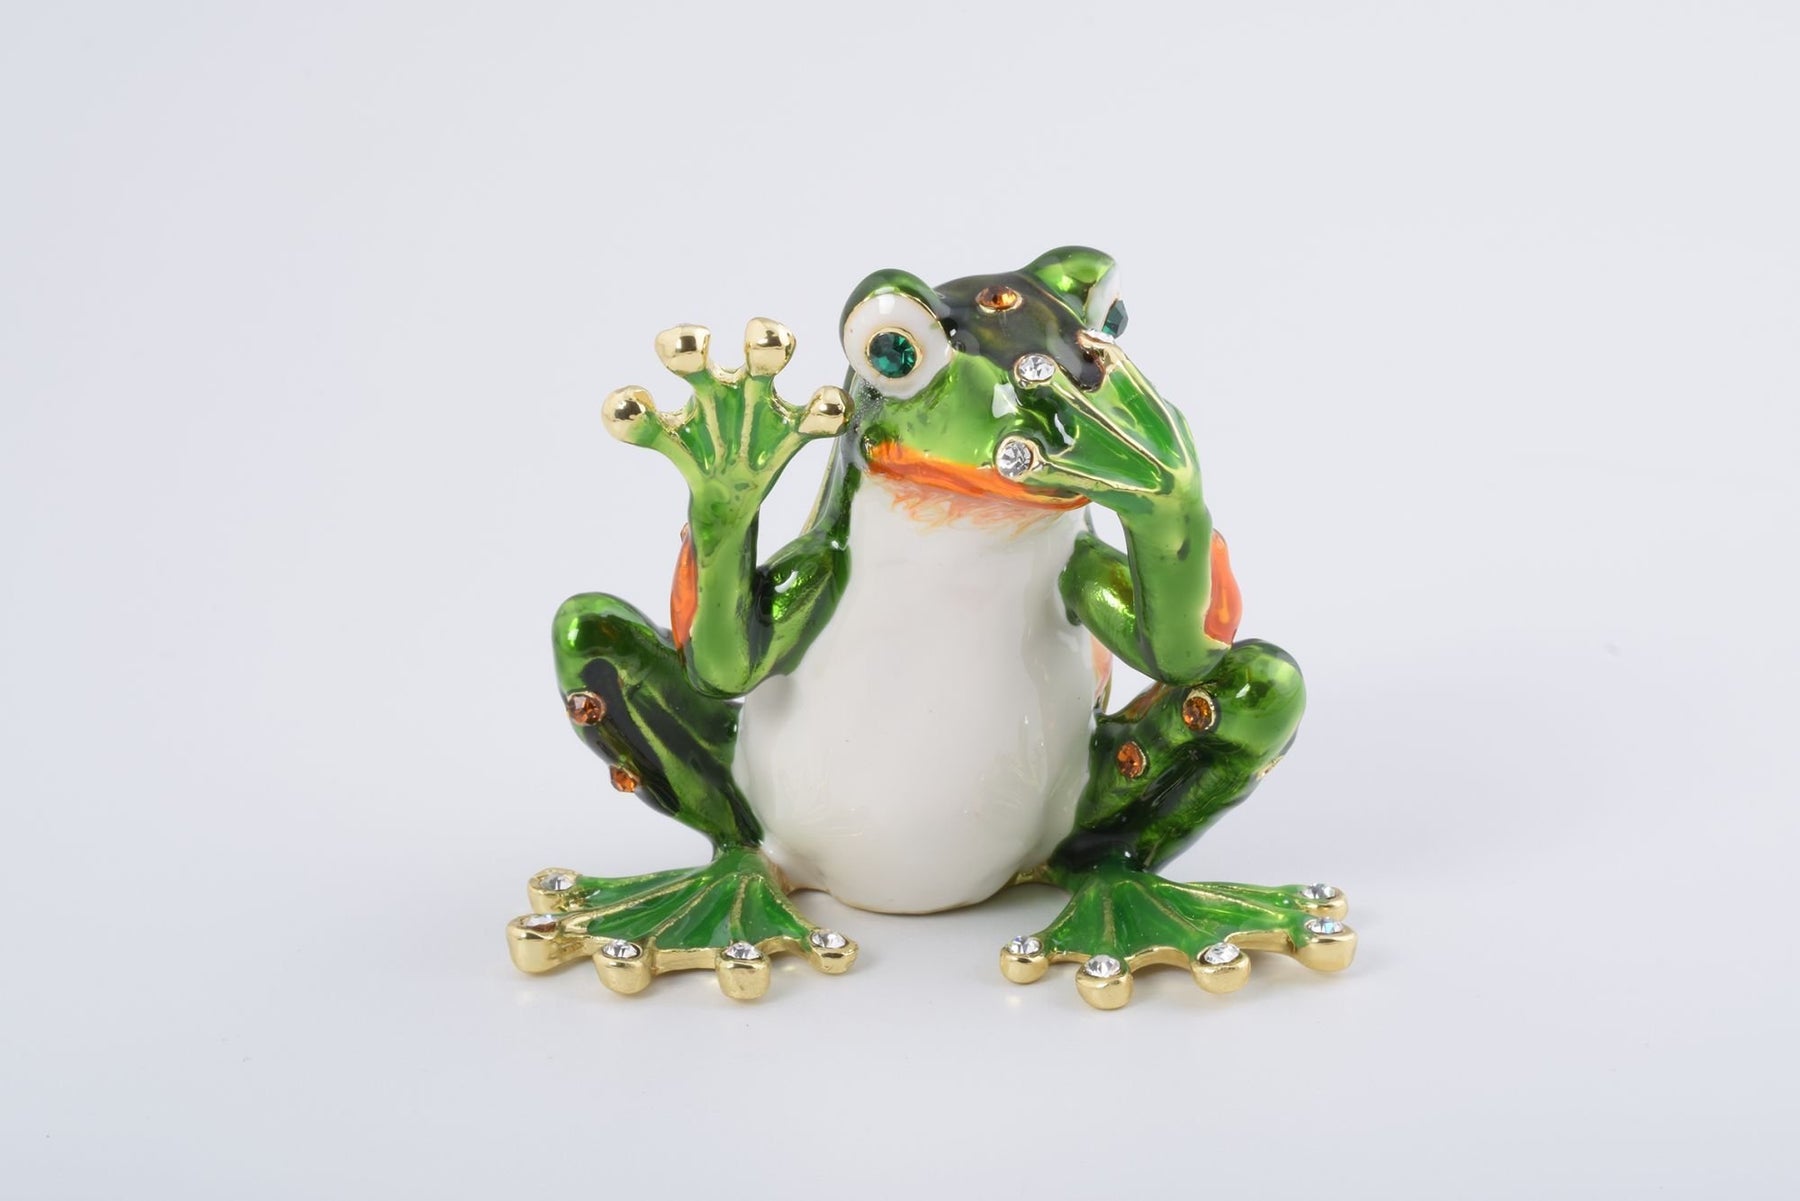 Keren Kopal Green Frog Speak No Evil  61.75